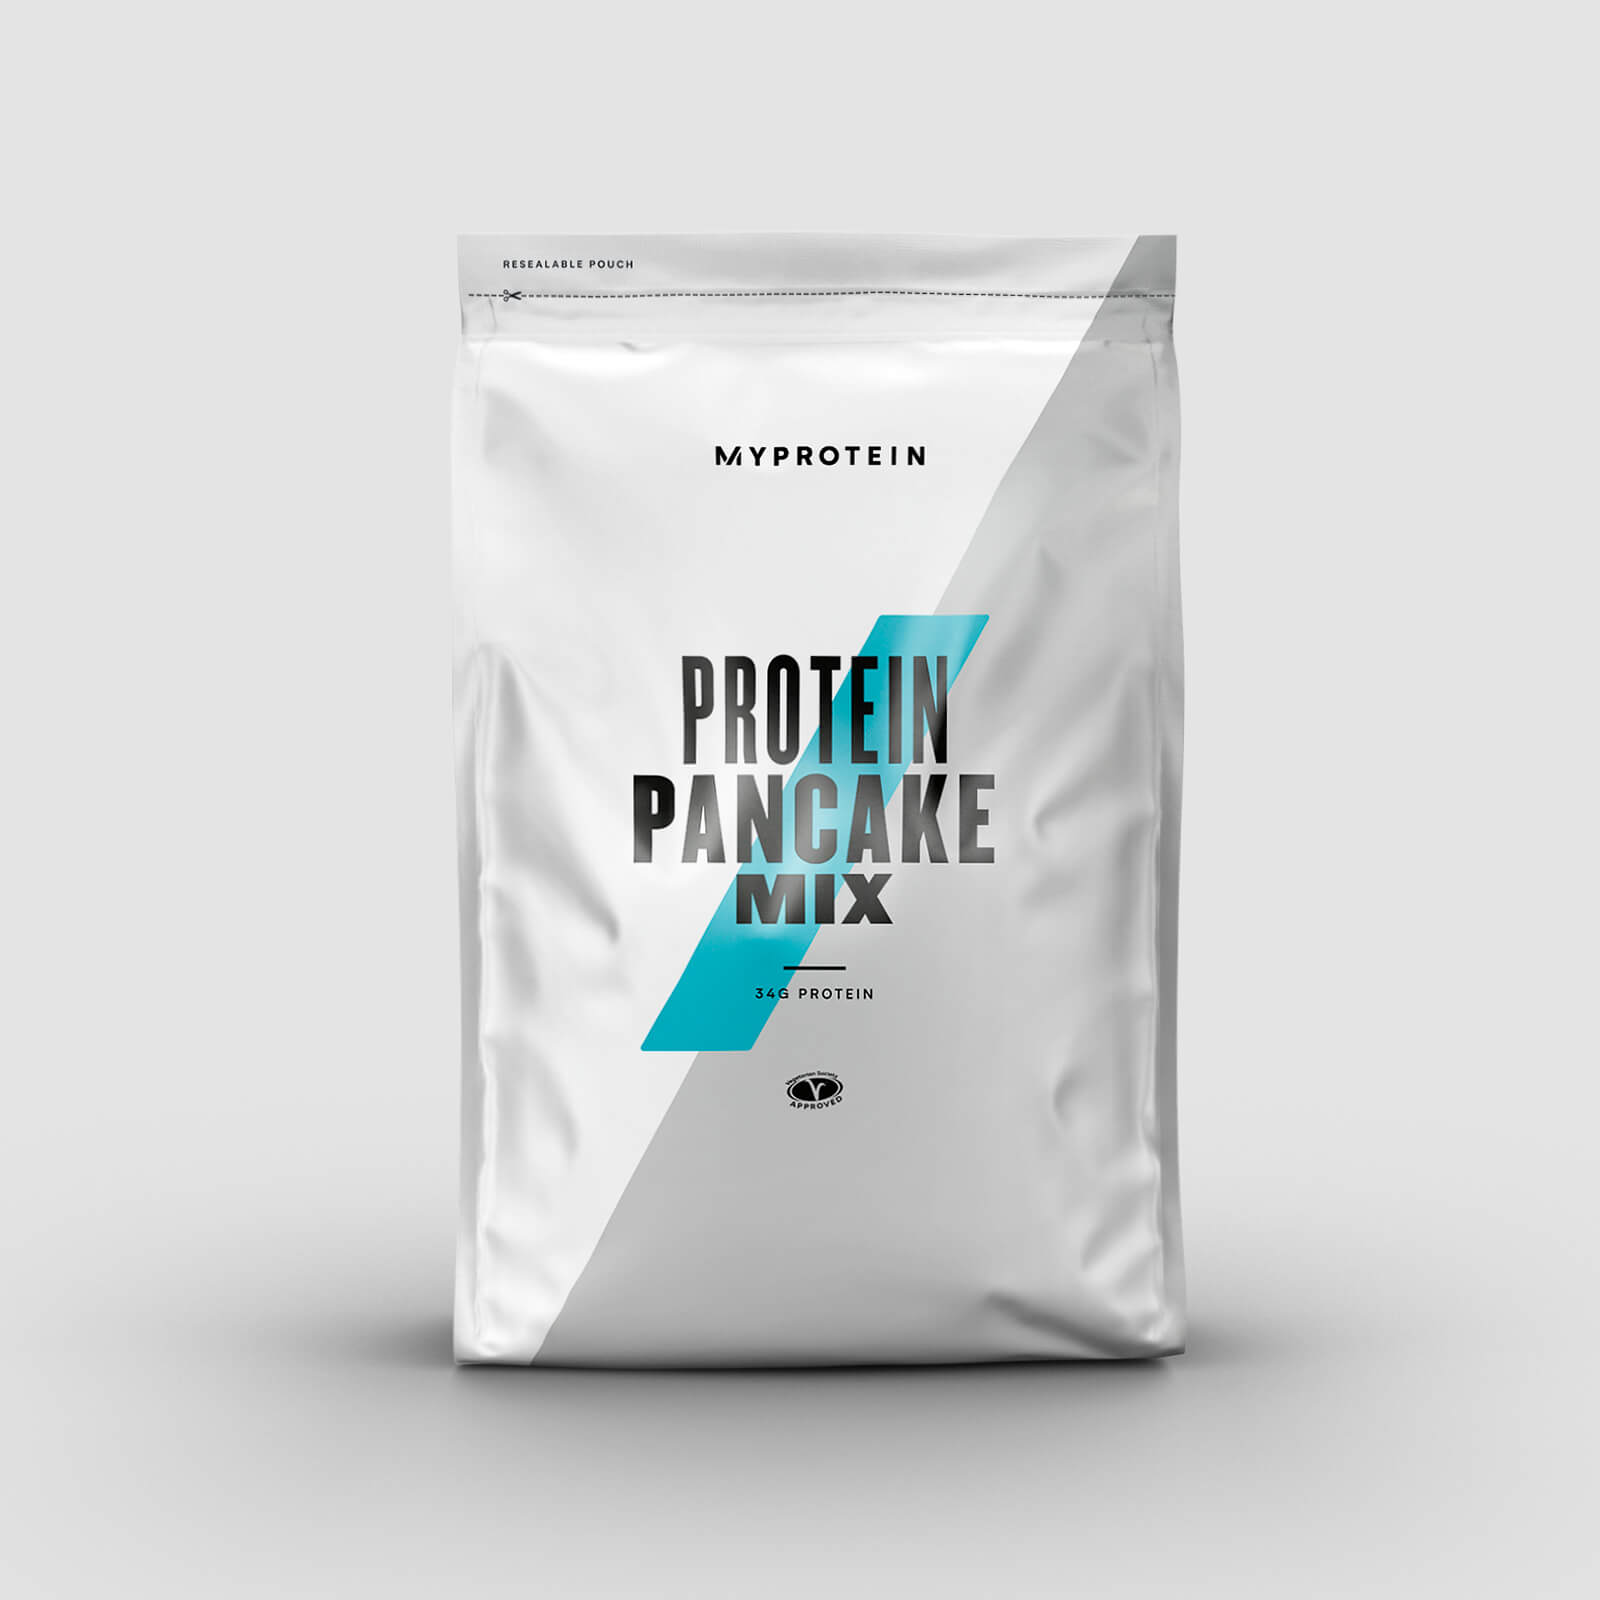 Myprotein Protein Pancake Mix - 200g - Nut Nougat Cream